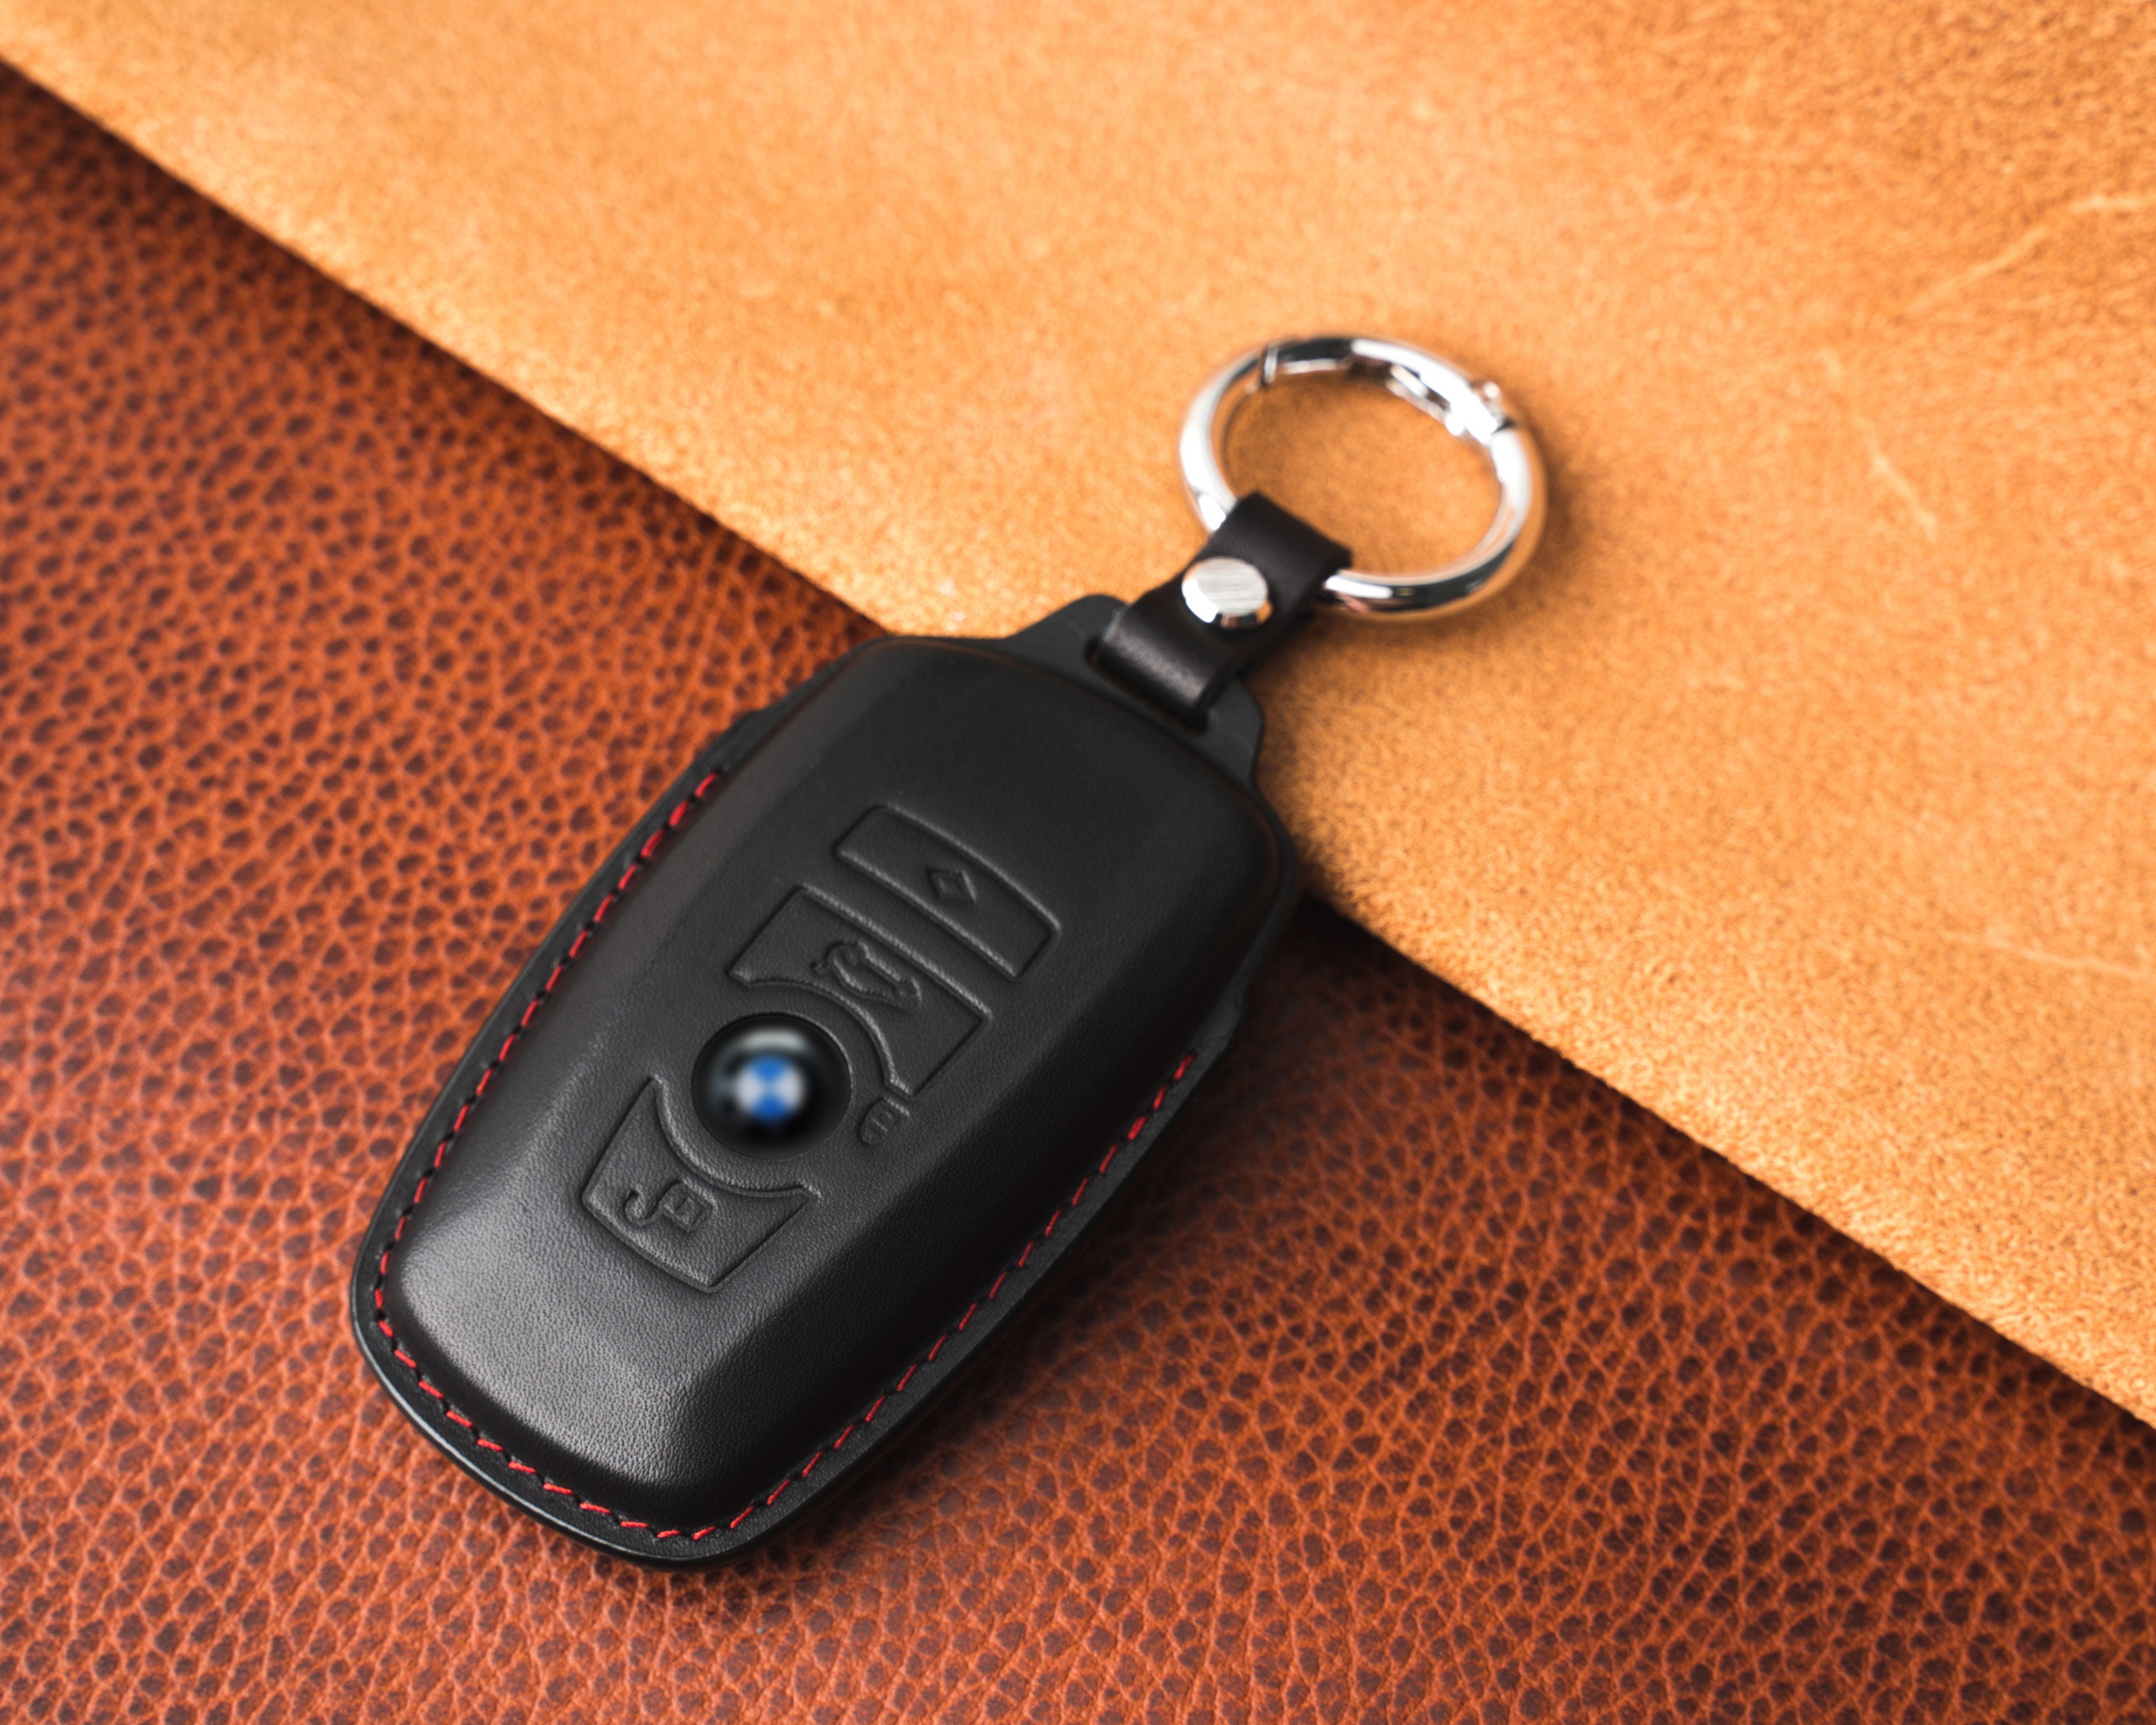 kwmobile Schlüsseltasche, Autoschlüssel Hülle für BMW - Nubuklederoptik -  Kunstleder Schutzhülle Schlüsselhülle Cover für BMW 3-Tasten Funk